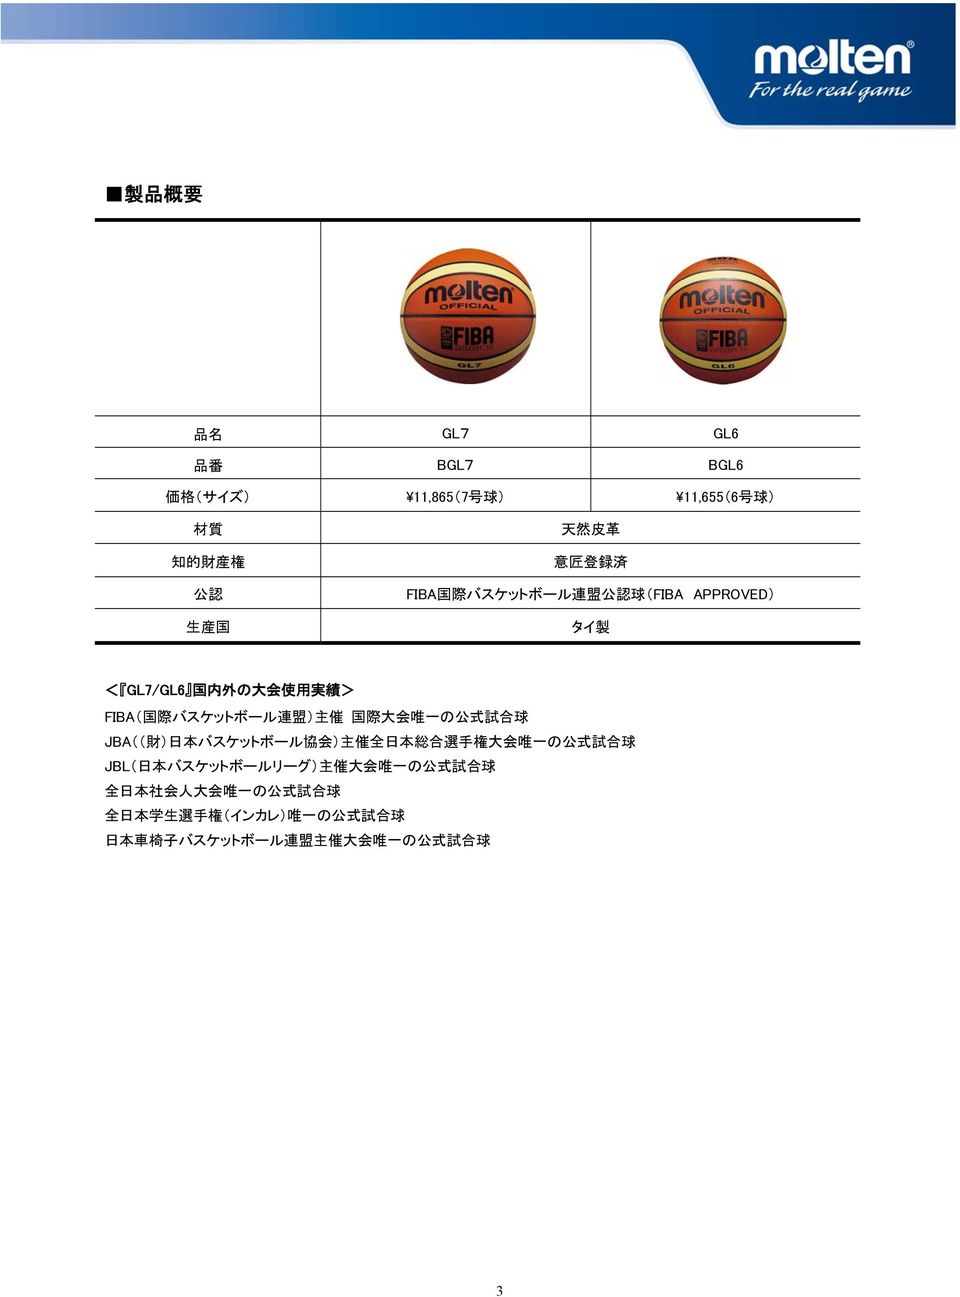 の 公 式 試 合 球 JBA(( 財 ) 日 本 バスケットボール 協 会 ) 主 催 全 日 本 総 合 選 手 権 大 会 唯 一 の 公 式 試 合 球 JBL( 日 本 バスケットボールリーグ) 主 催 大 会 唯 一 の 公 式